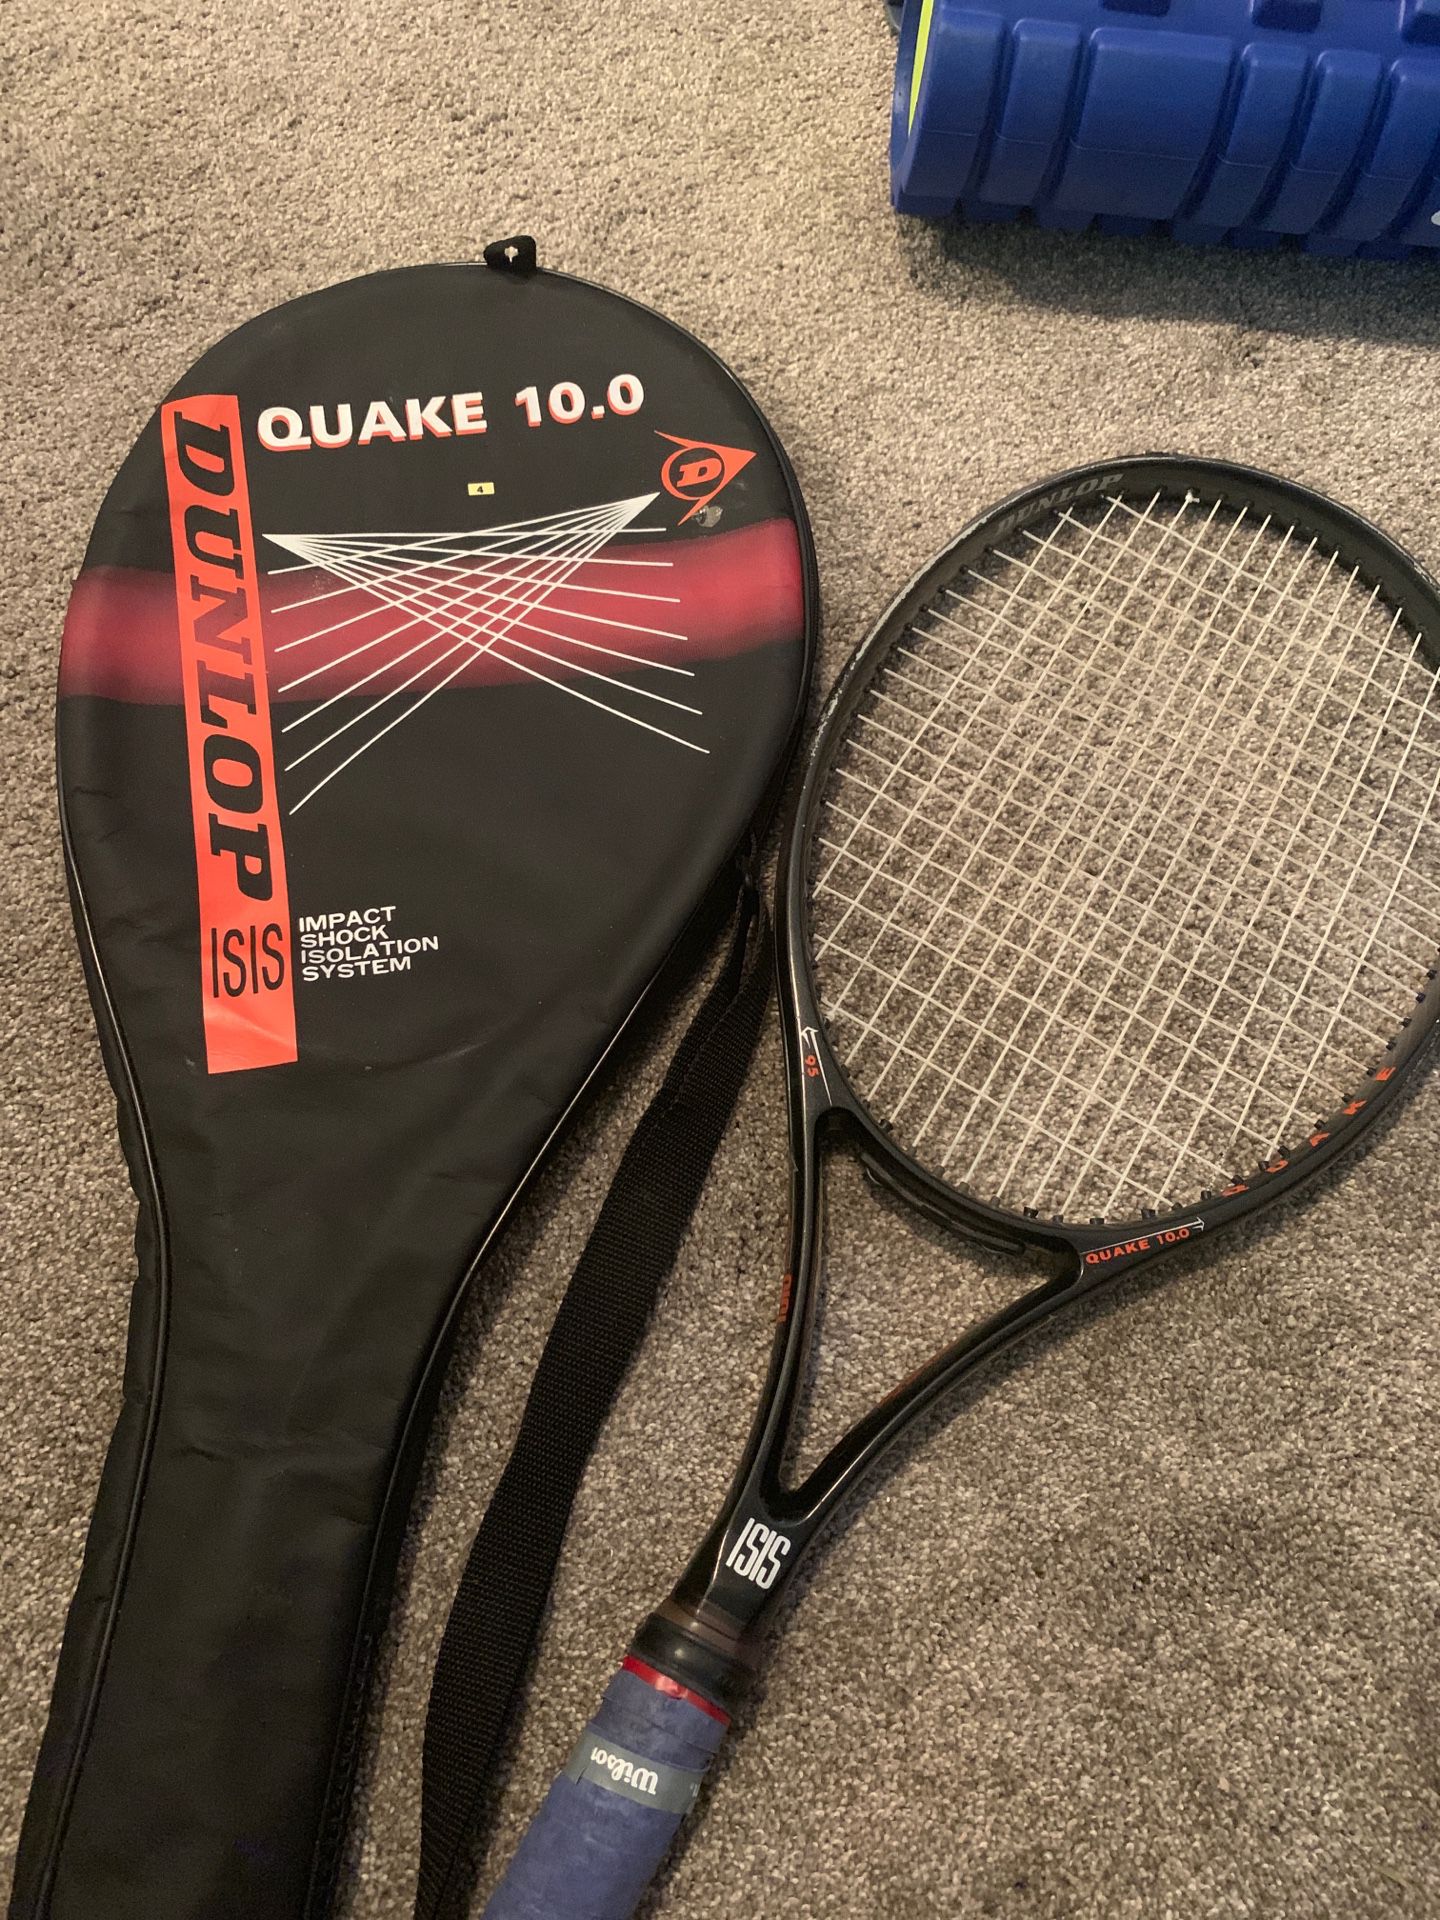 Dunlop quake tennis racquet